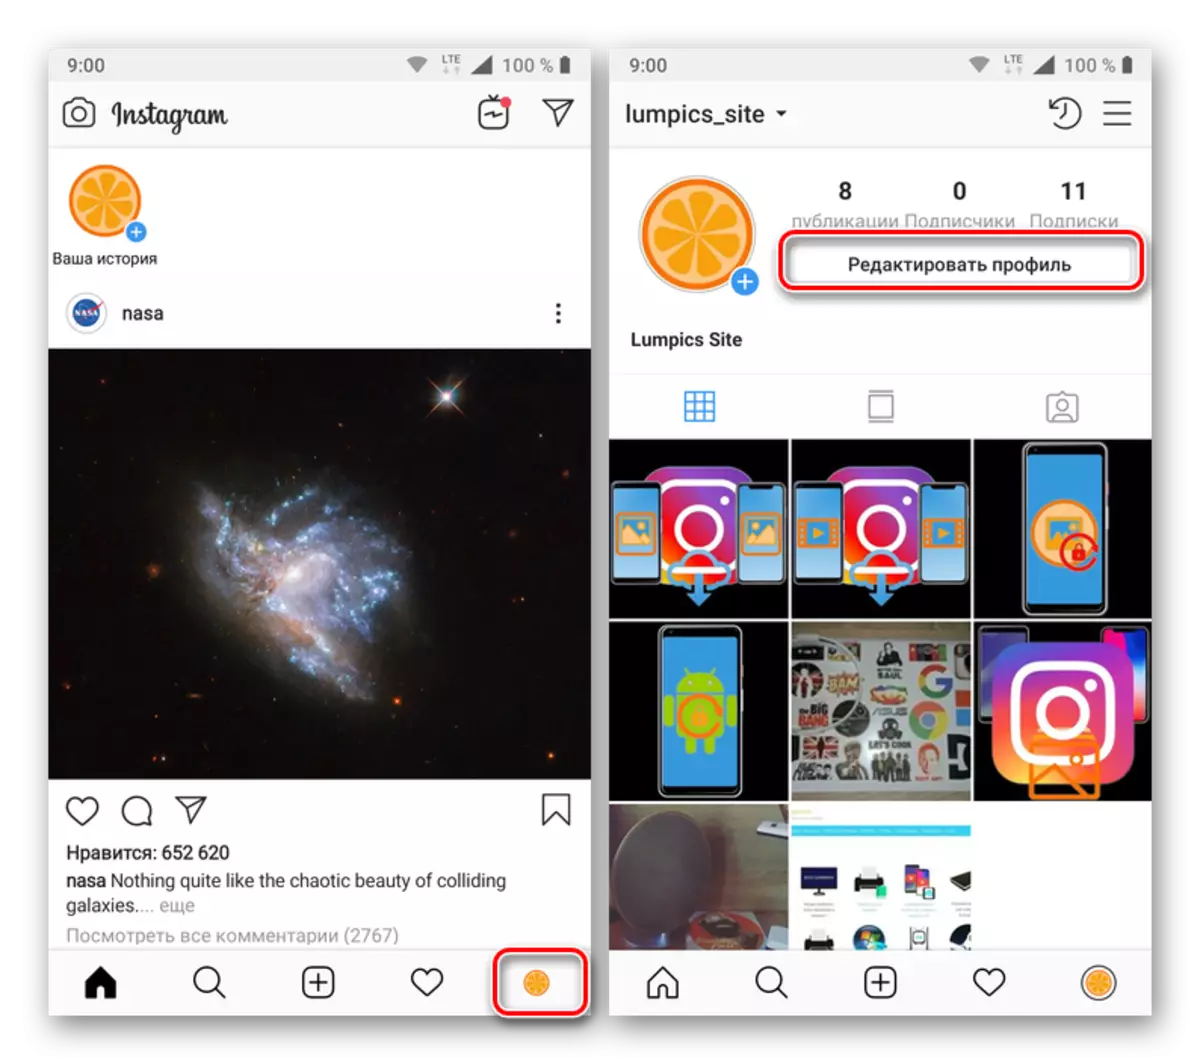 Instagram goşundylarynda profiliňizi redaktirlemäge gidiň